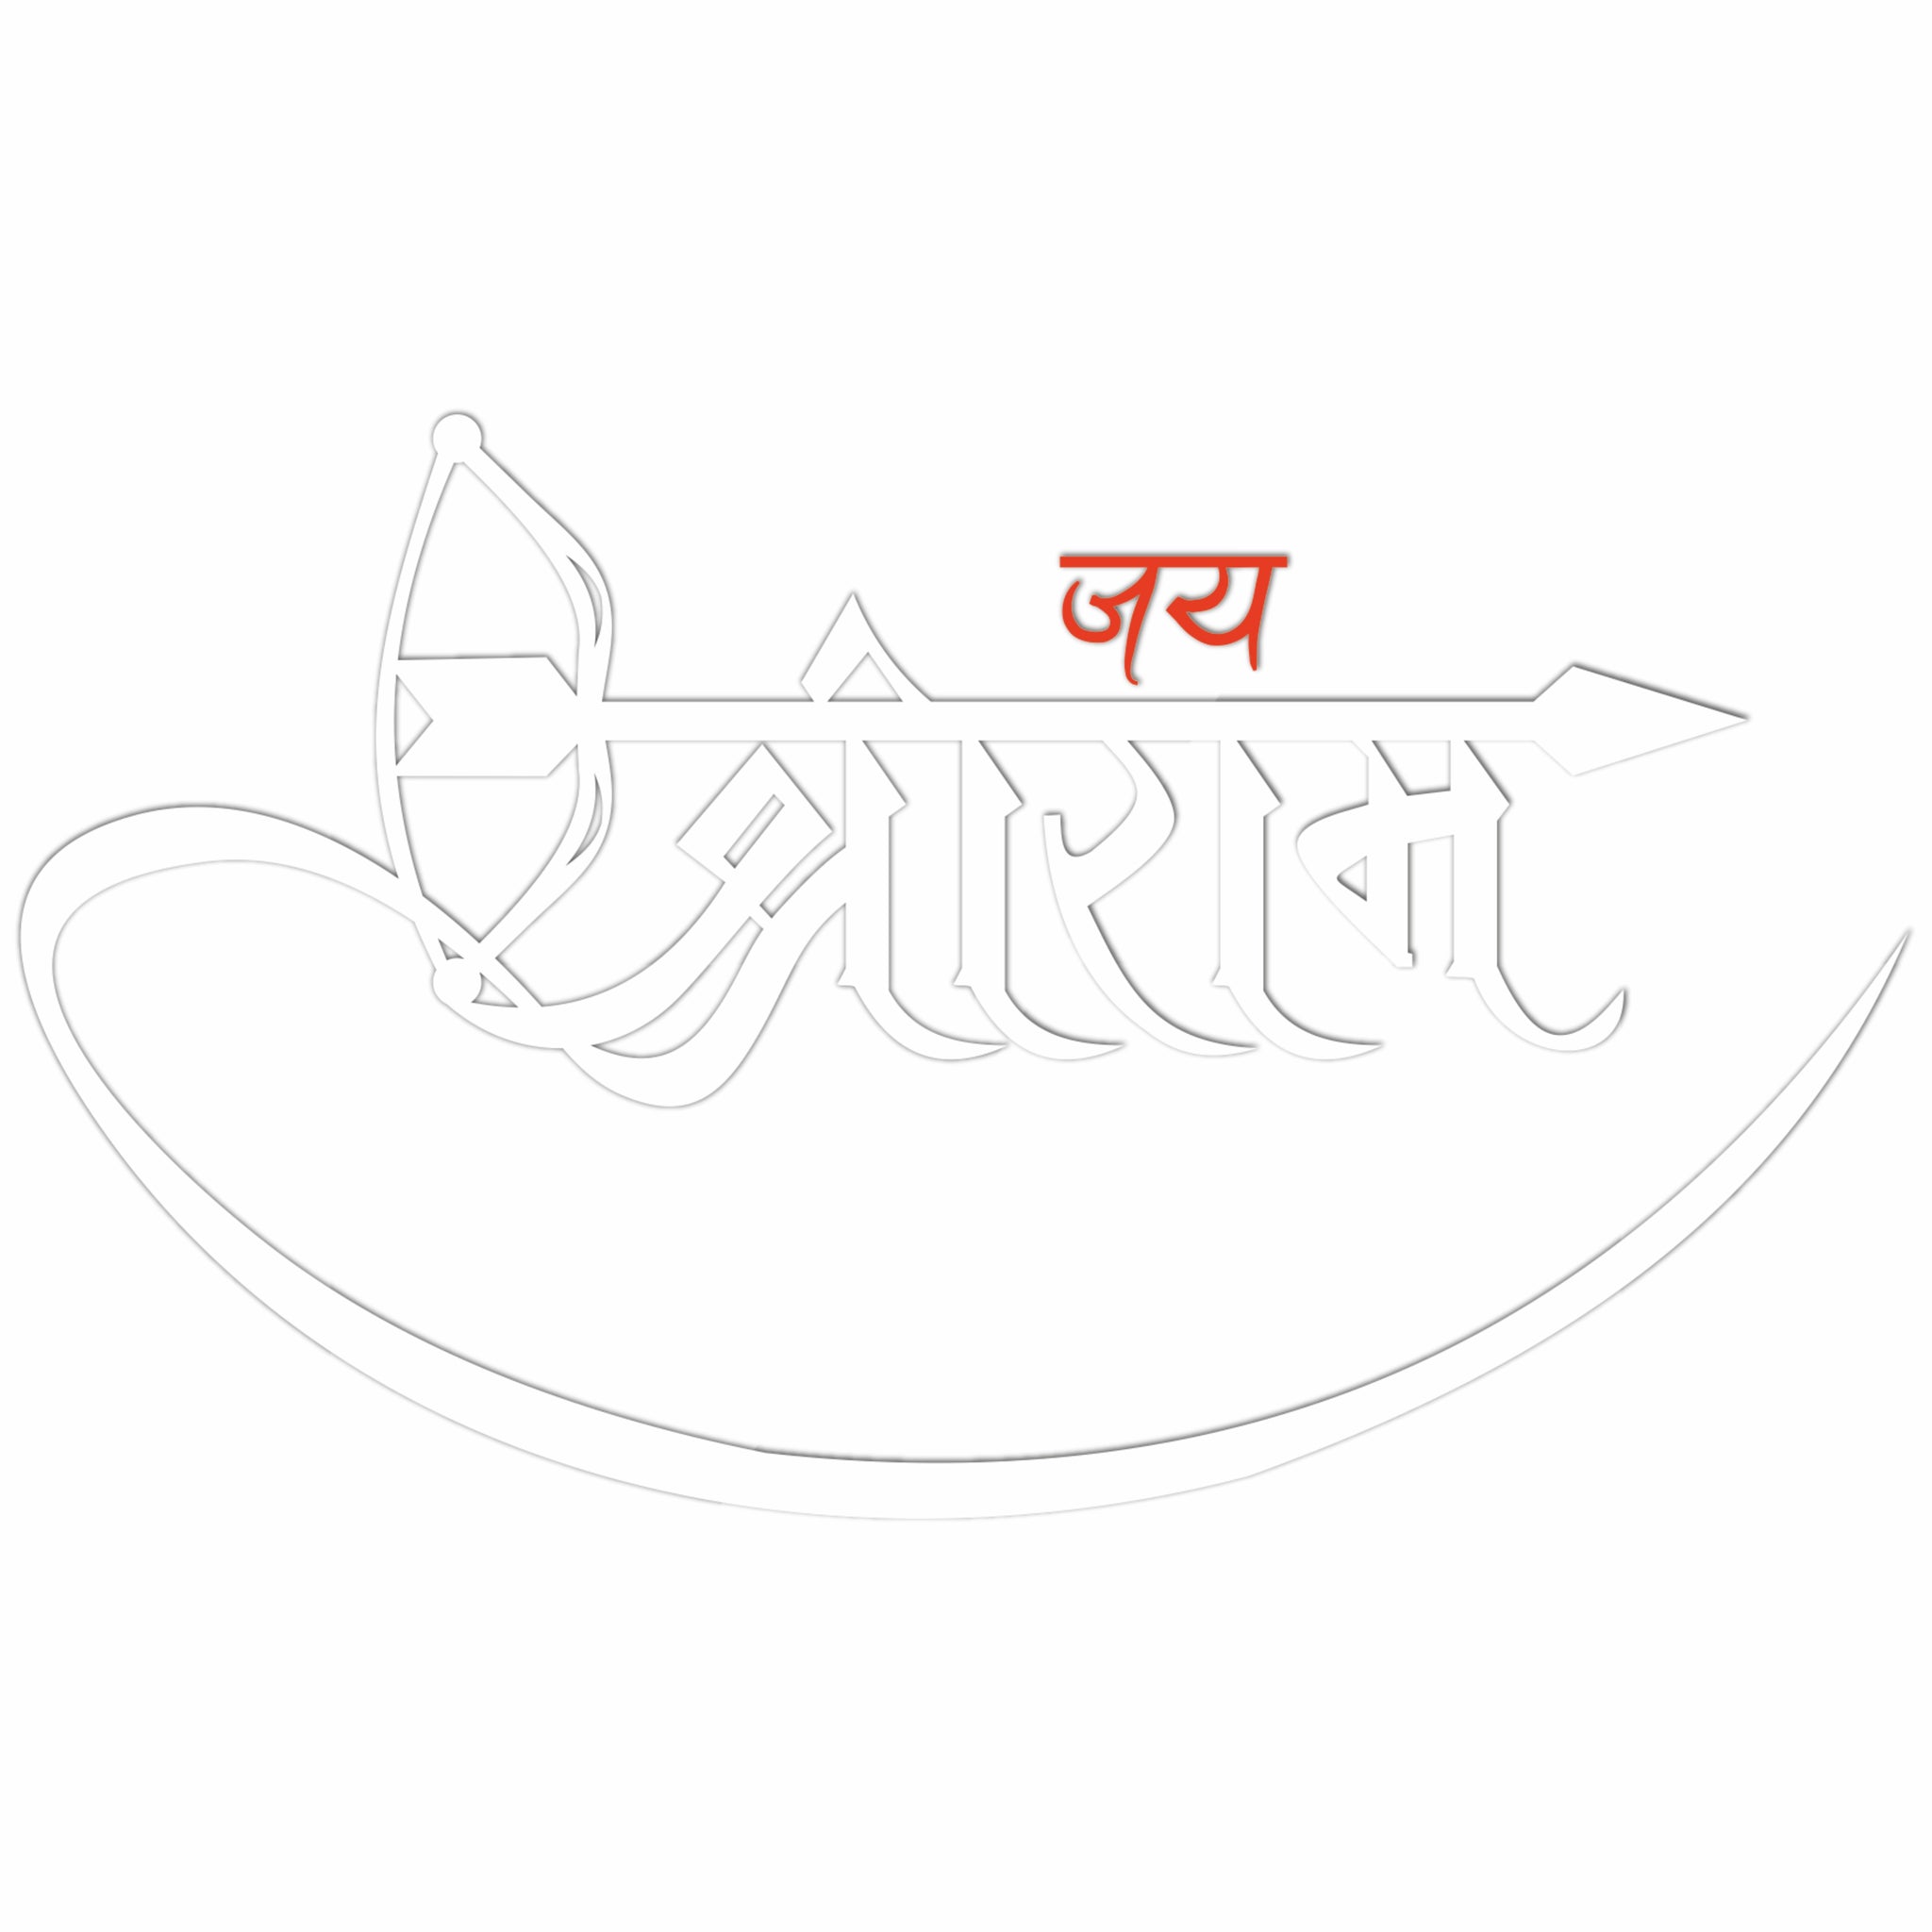 Ganesh Vandana Png - Png Ganpati Bappa Morya Clipart (#2370532) - PikPng